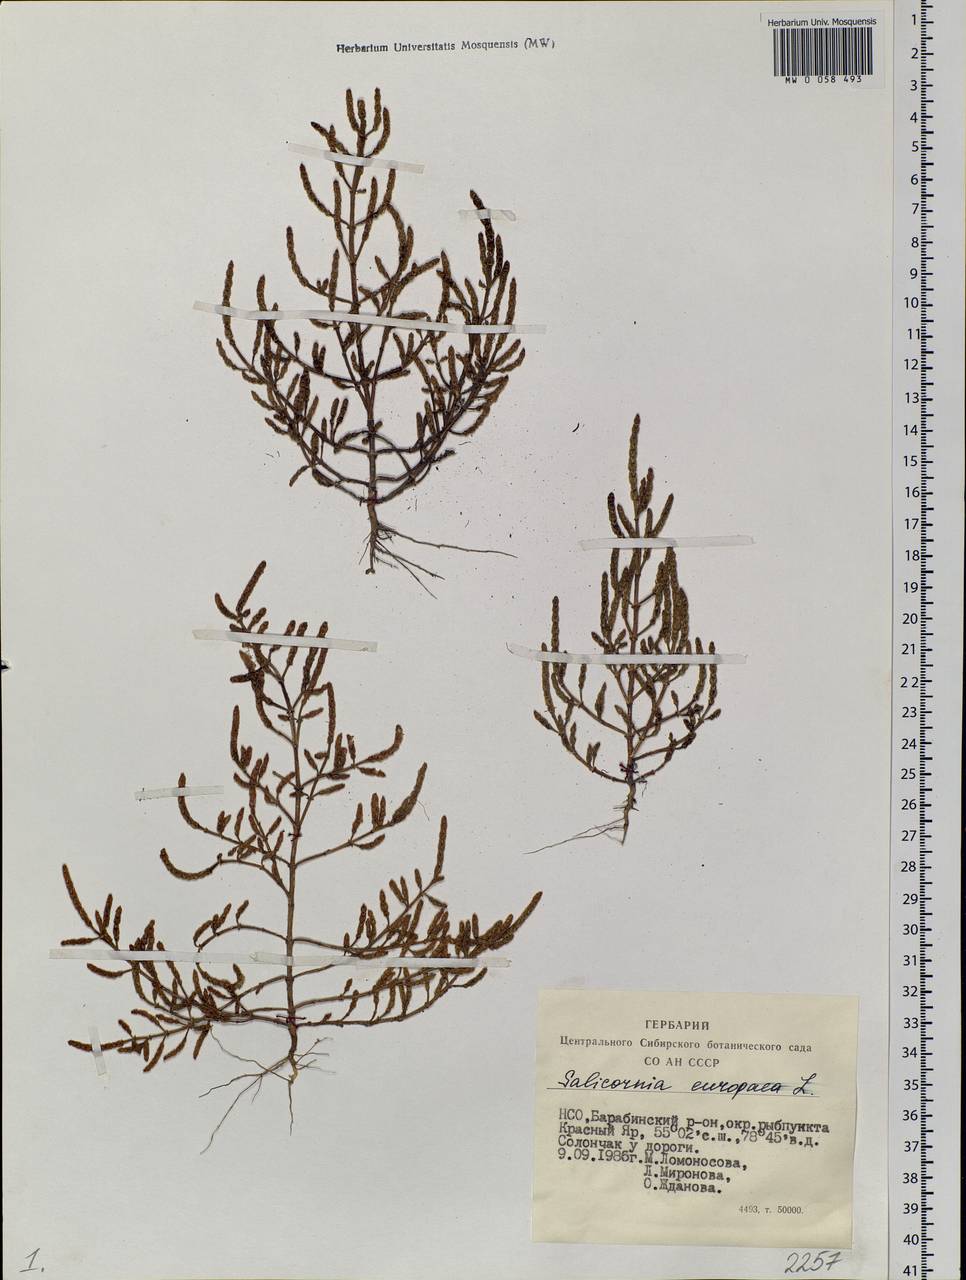 Salicornia europaea L., Siberia, Western Siberia (S1) (Russia)